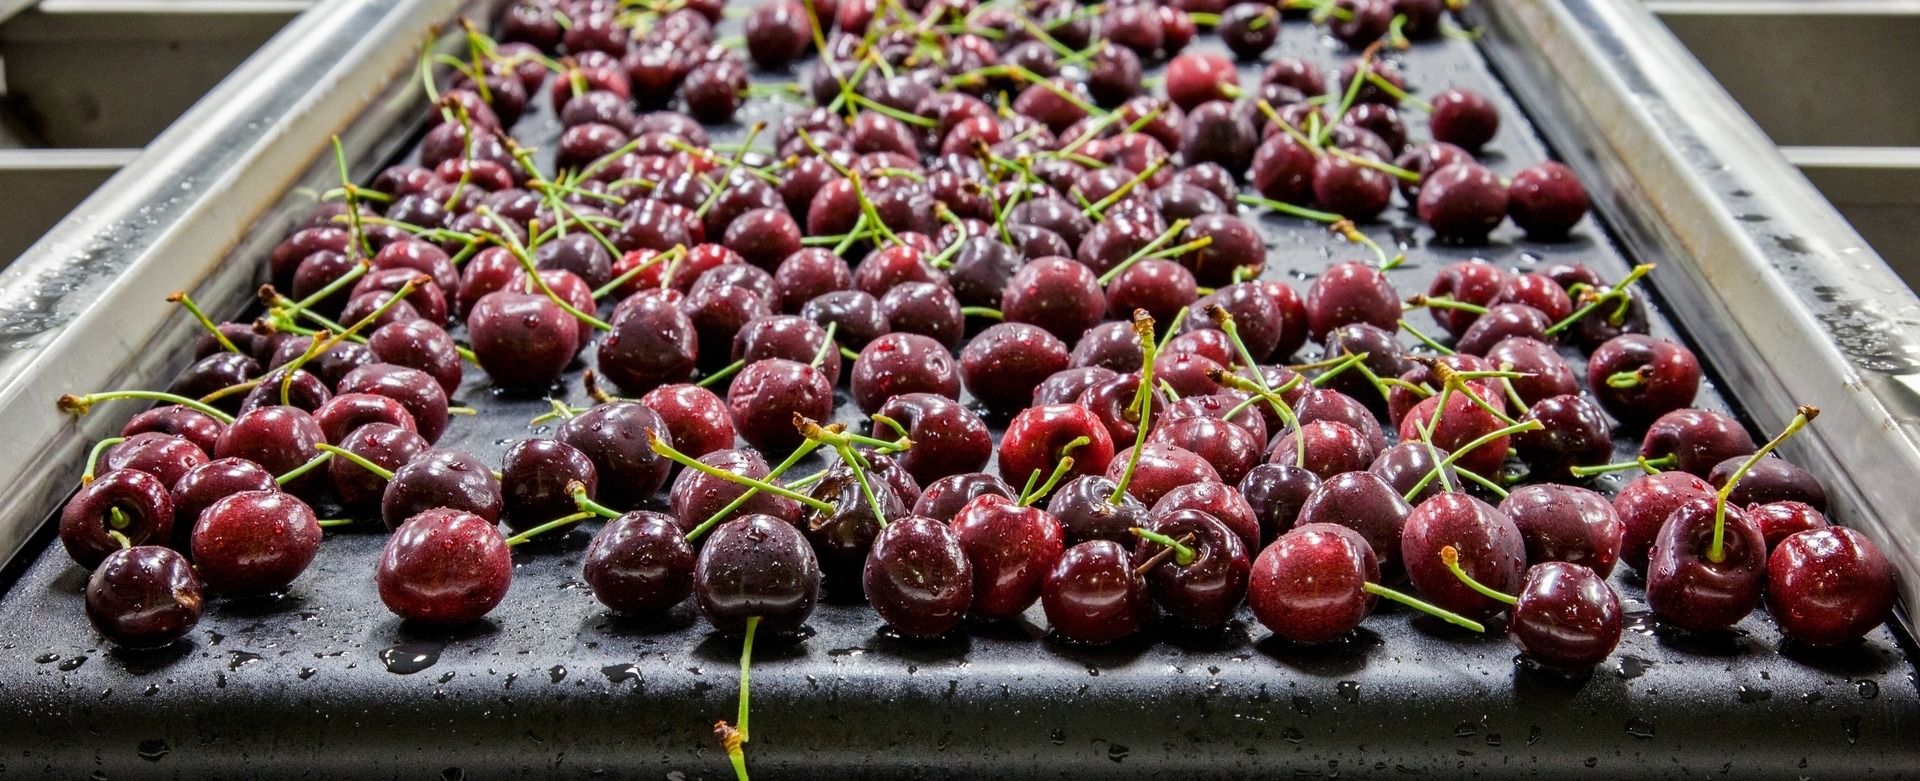 Cherries on conveyor belt